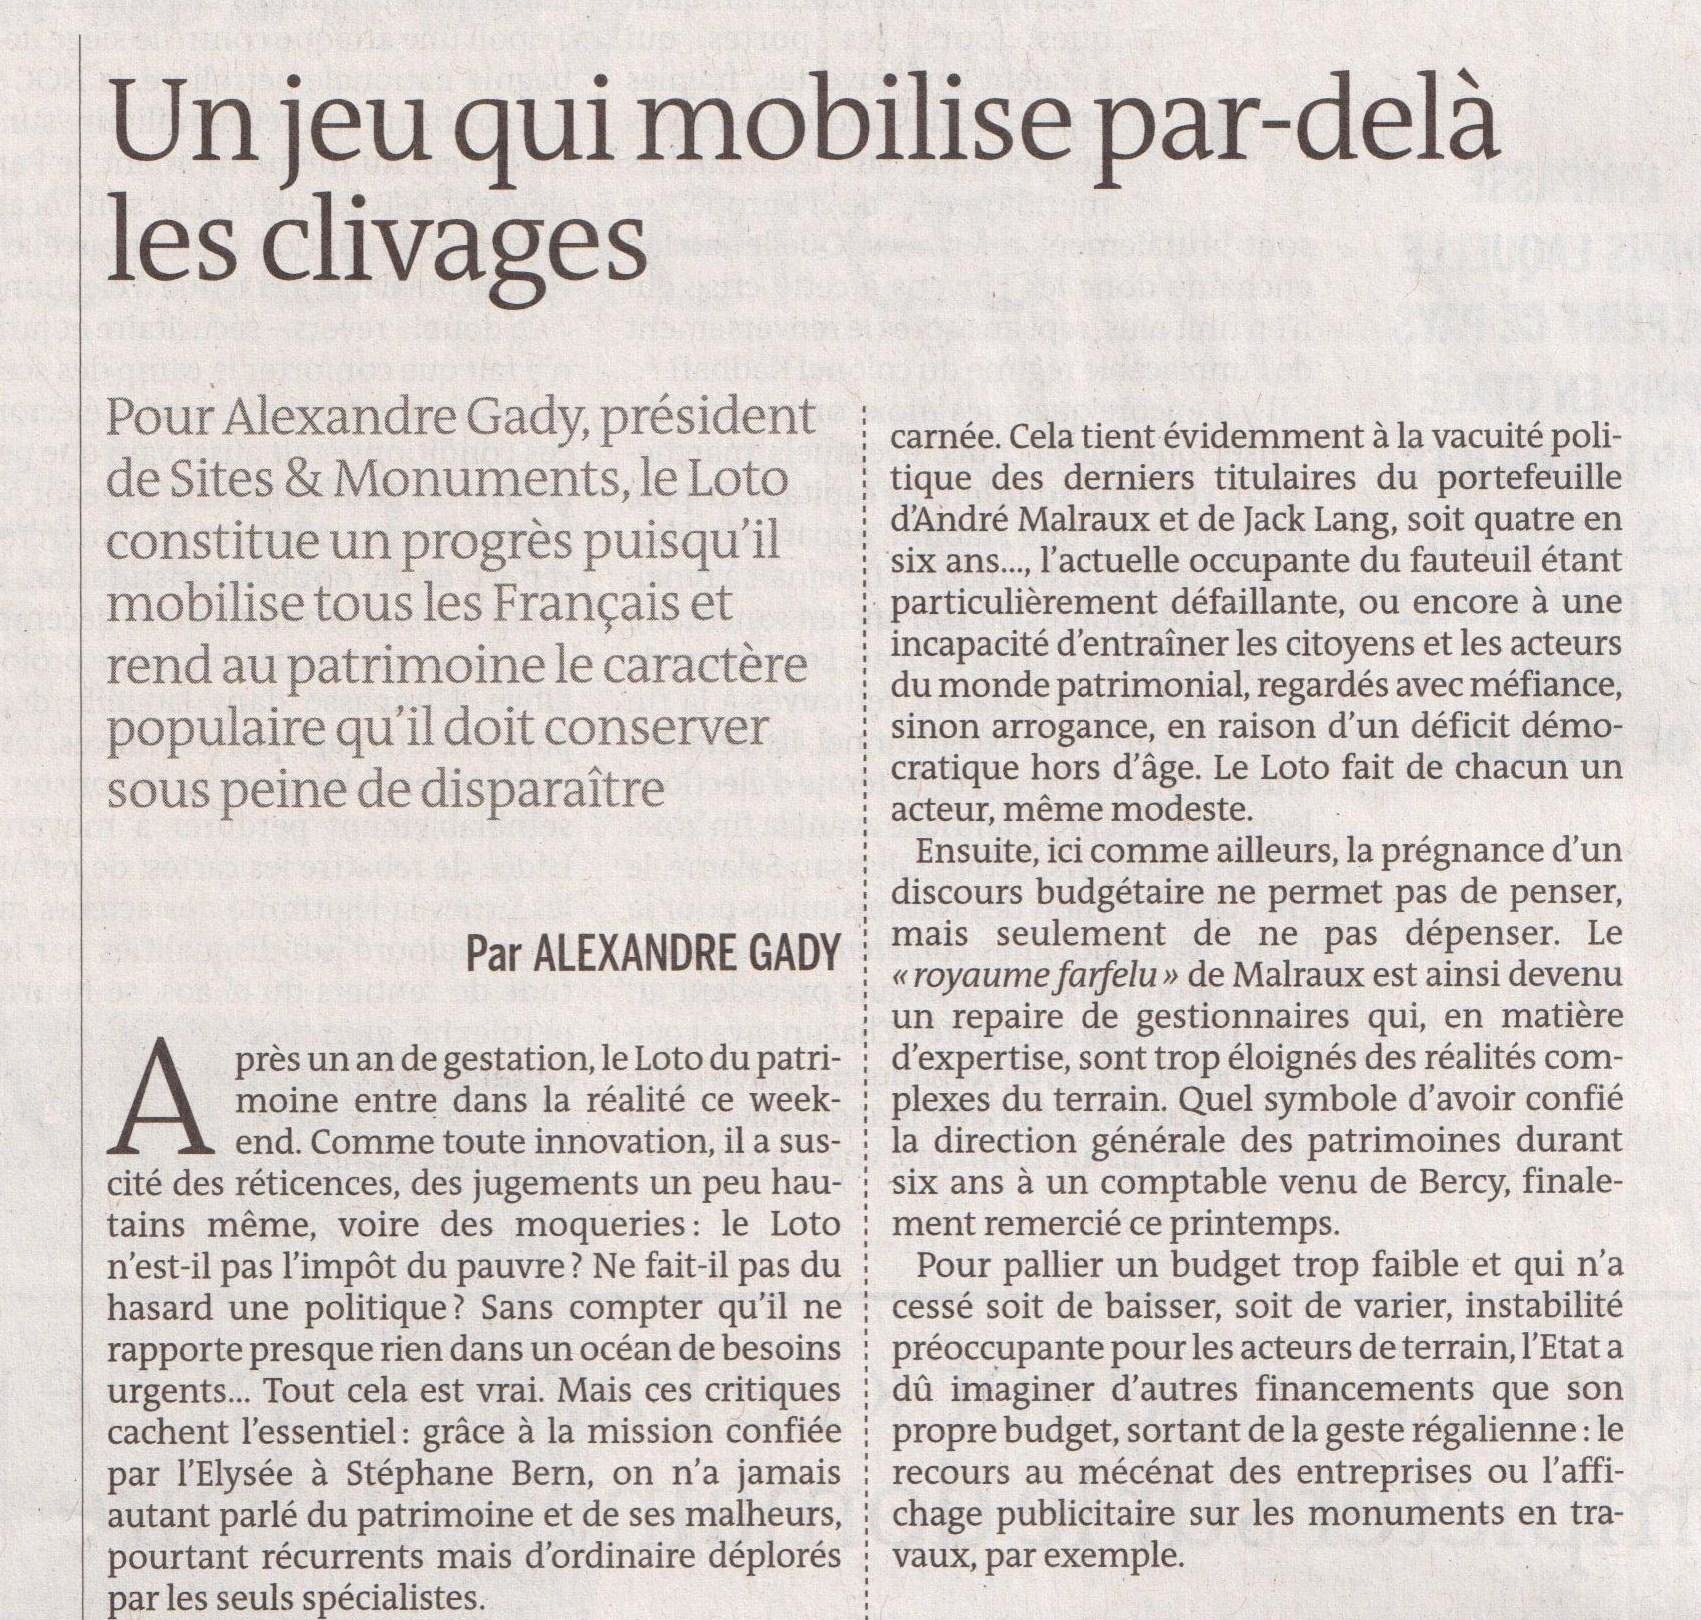 Tribune A Gady, Le Monde du 16-17 septembre 2018 (2)